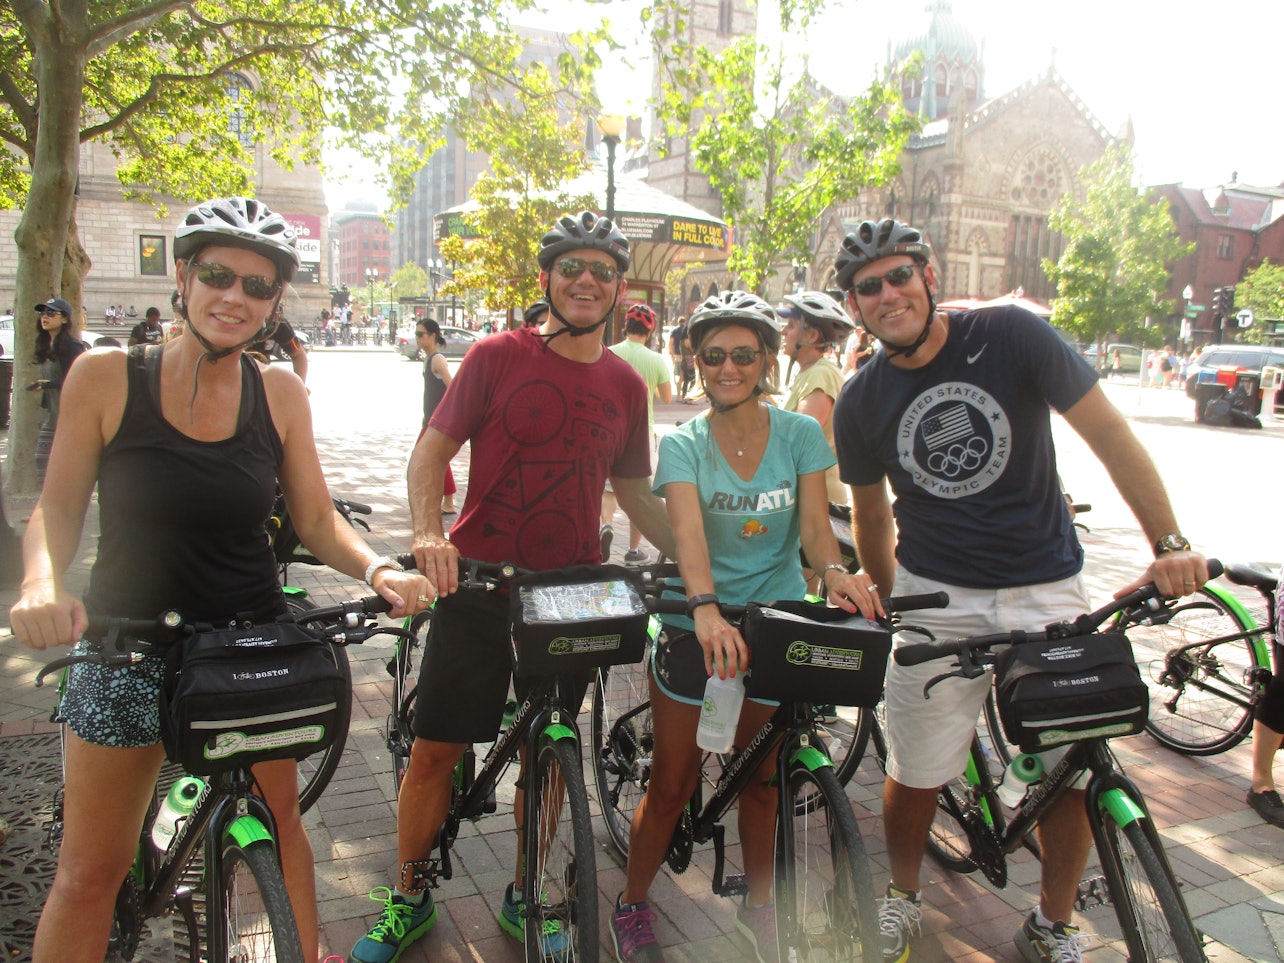 Tour de bicicleta em Boston - Acomodações em Boston